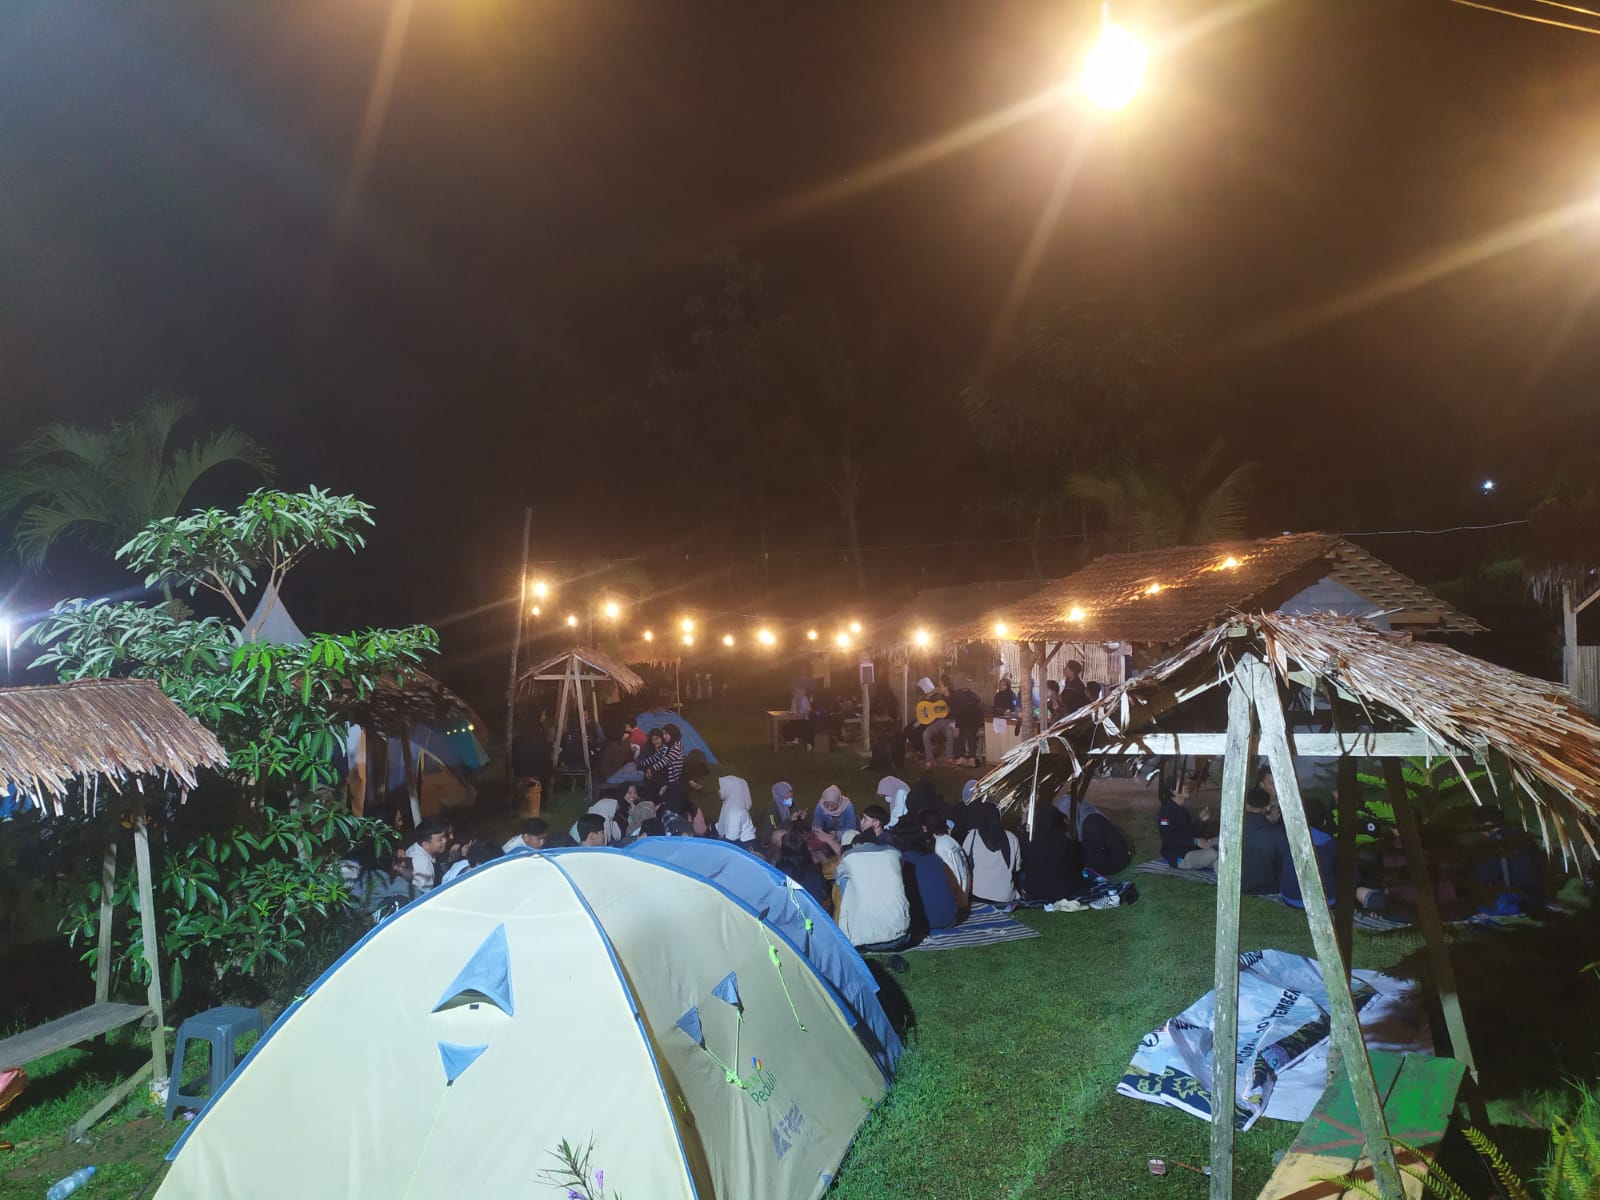 Binaan PLN Kedai Kopi Tenda, Berhasil Tingkatkan Ekonomi Warga Desa Lerep Ungaran